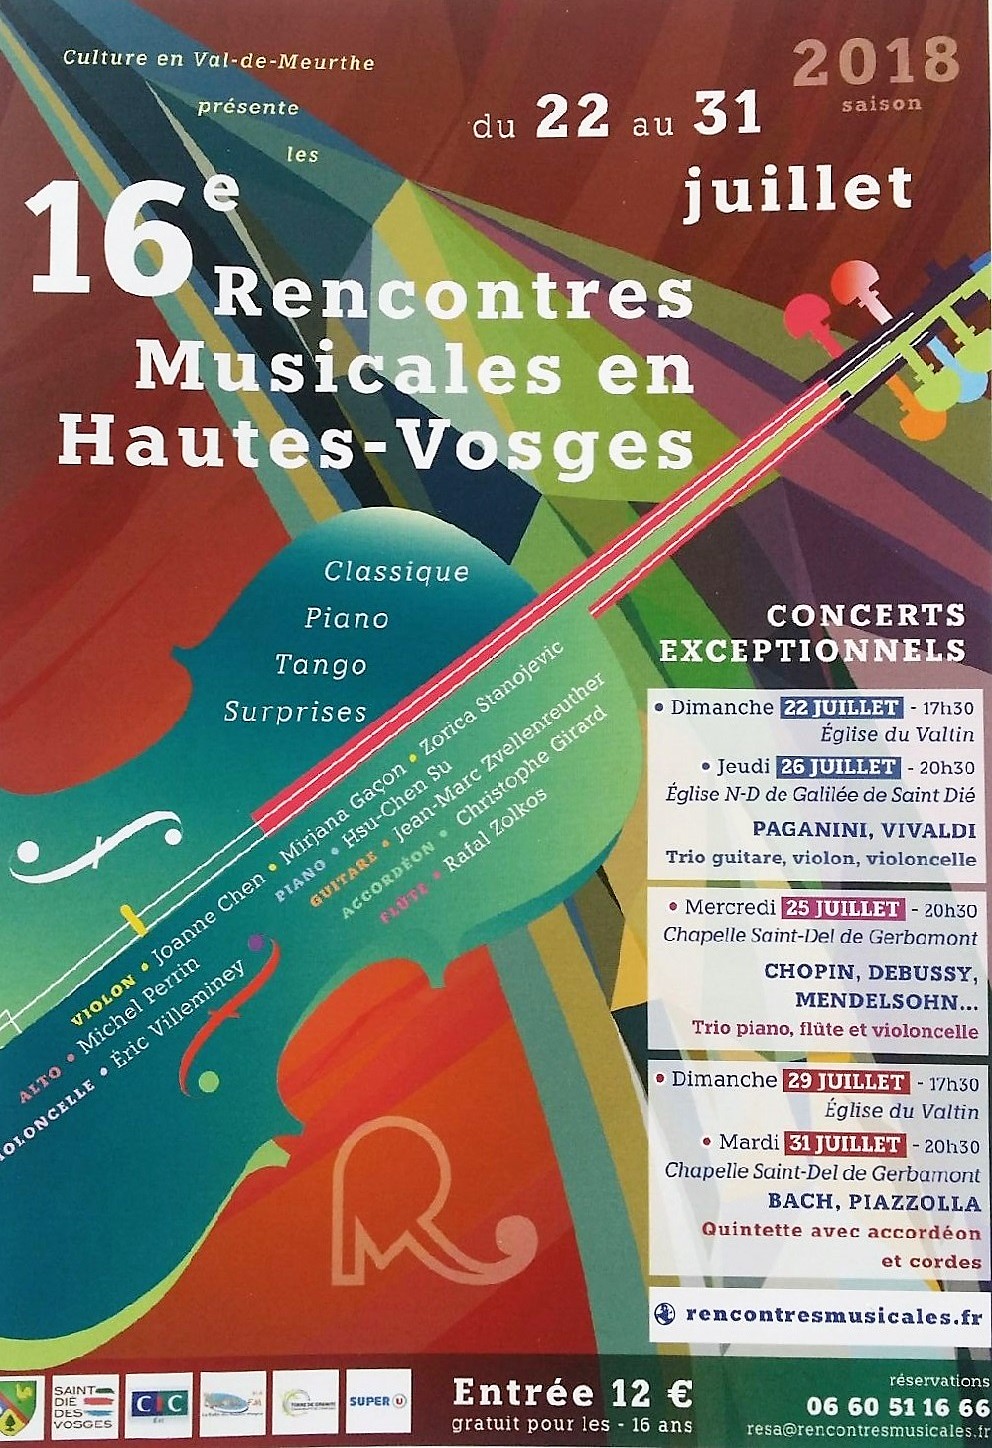 Hautes Vosges : (re)découvrez les Rencontres Musicales avec la 16e édition